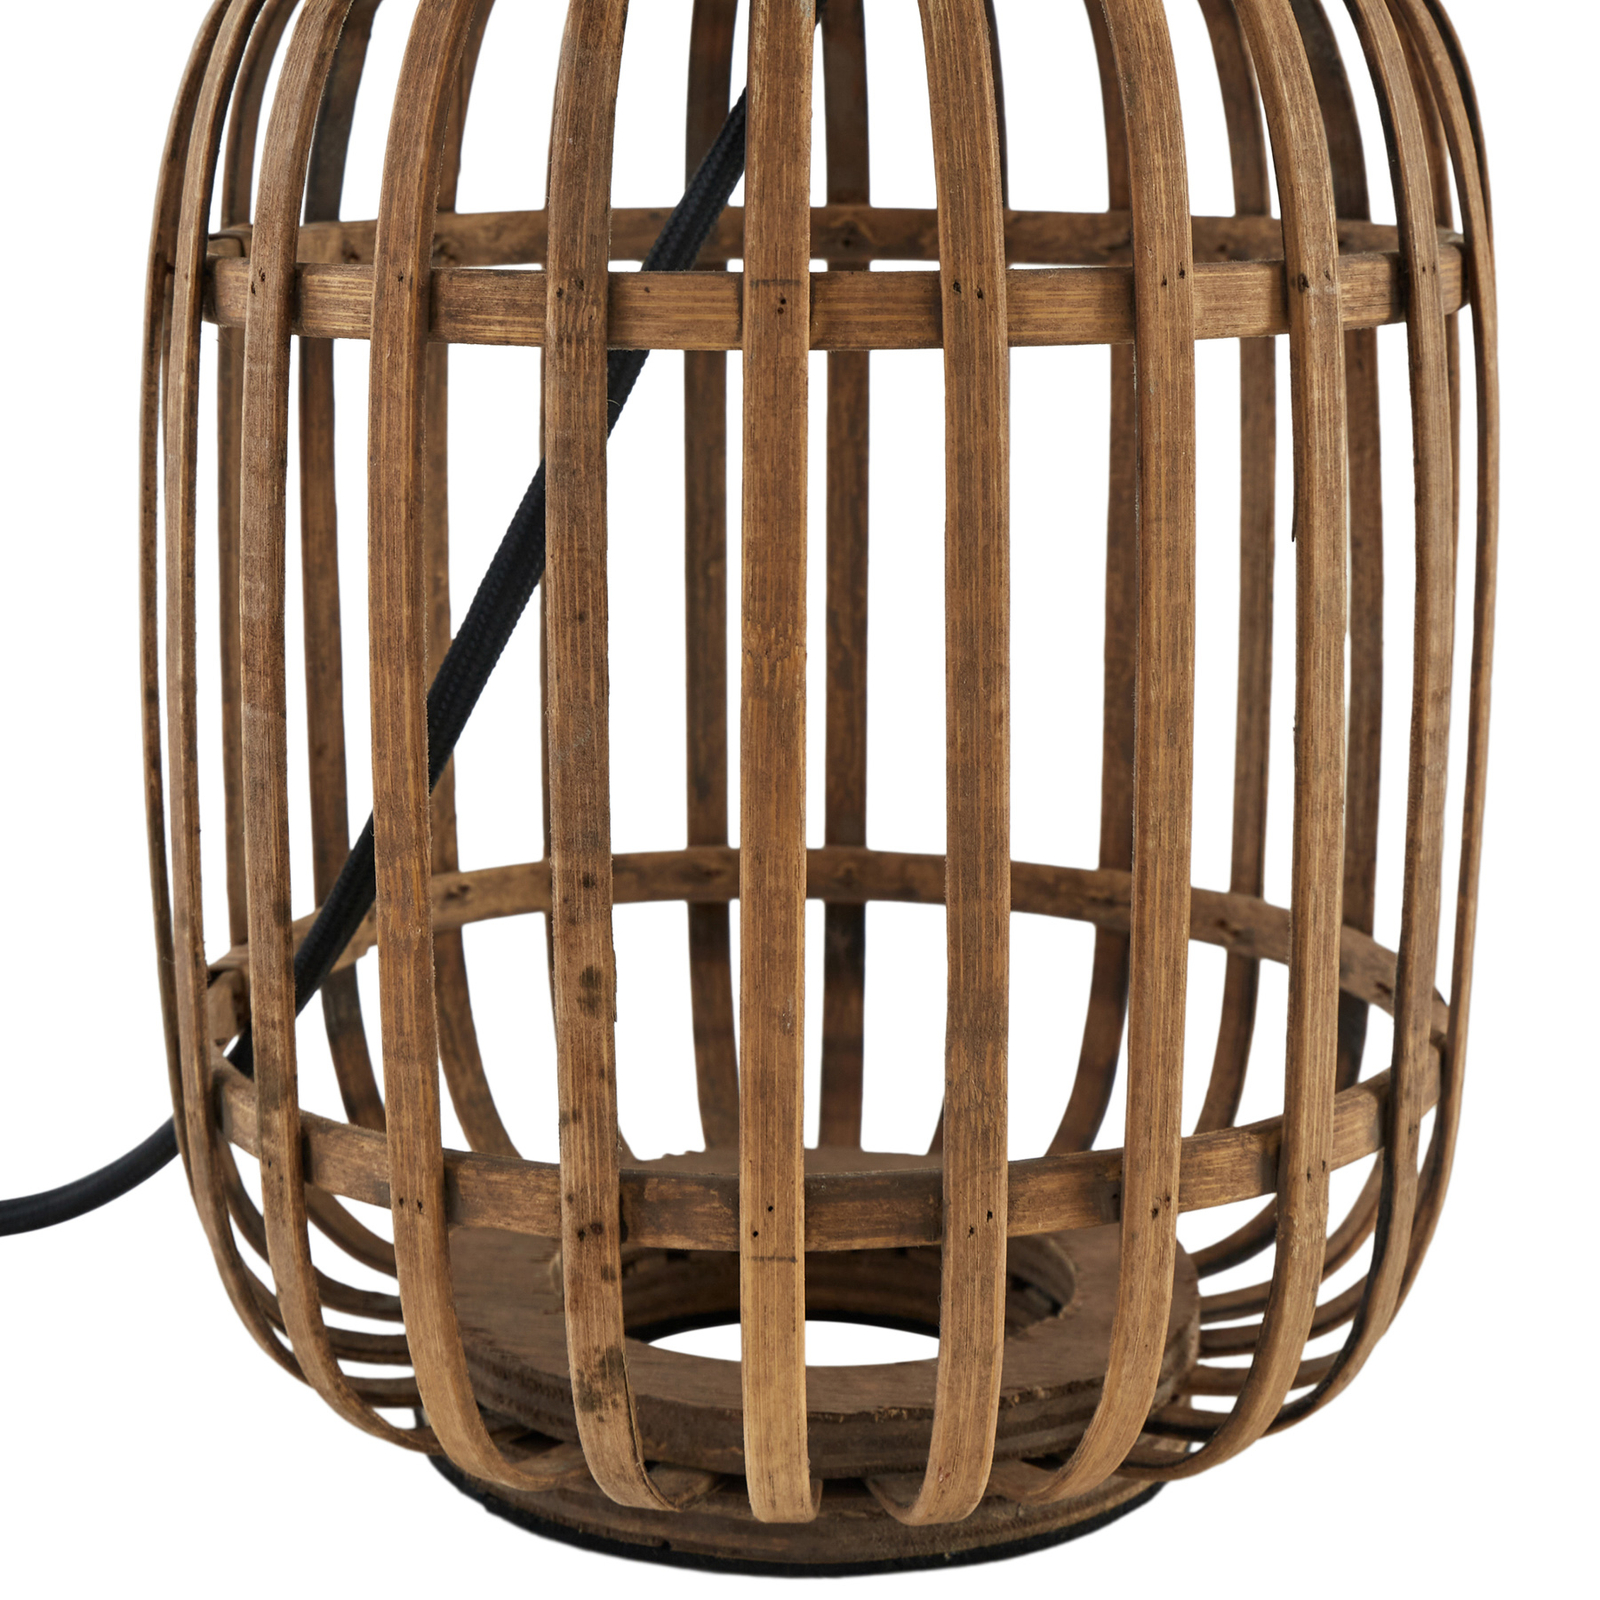 Stolná lampa Lindby Marzanna, sivá, bambus, 42,5 cm, E27